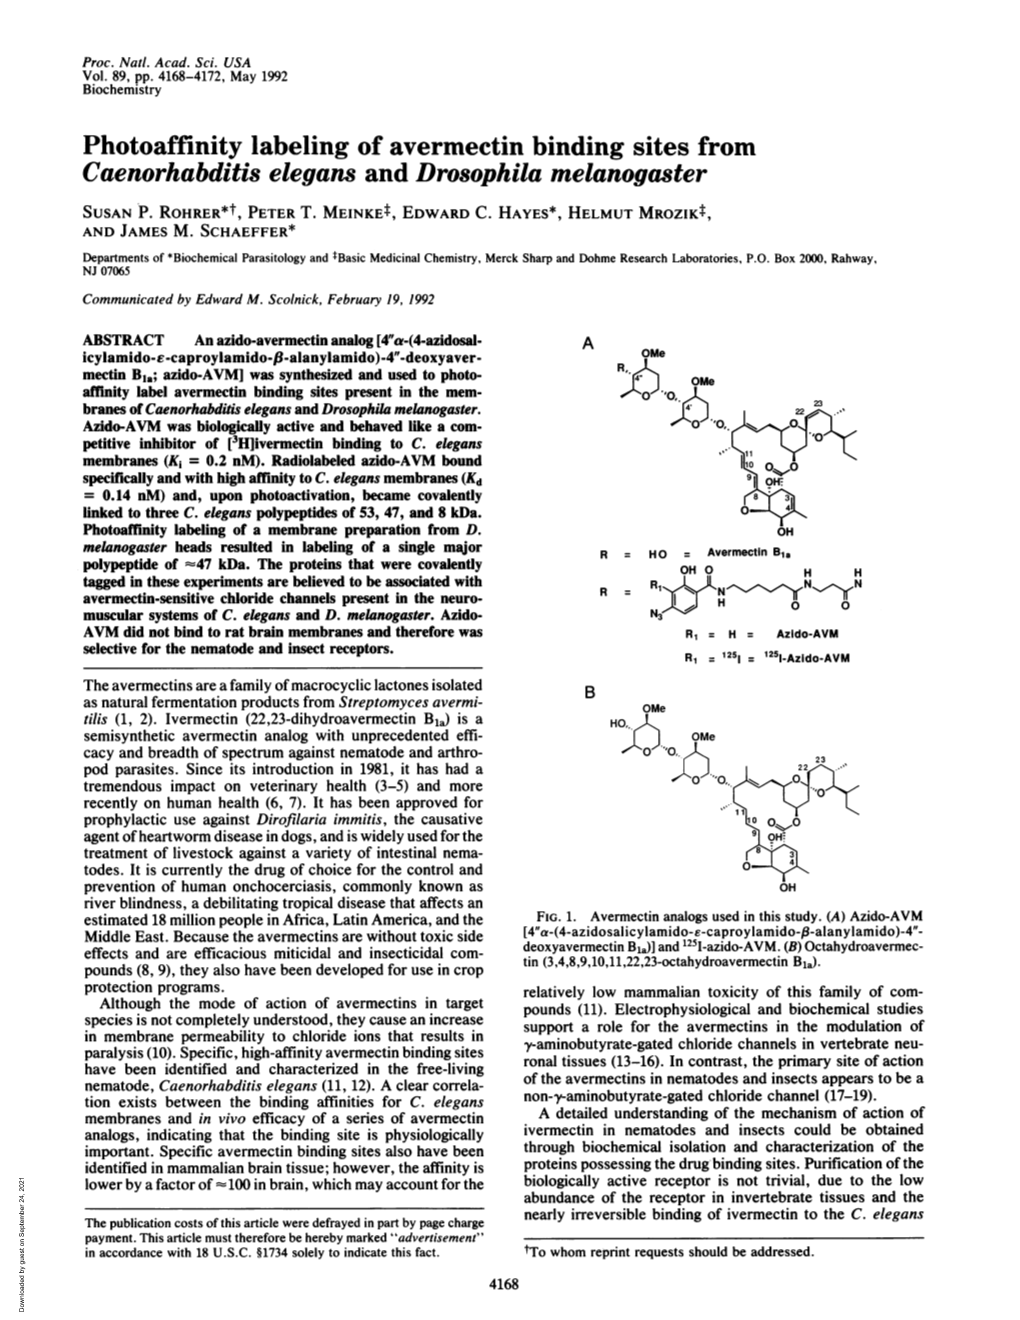 Photoaffinity Labeling of Avermectin Binding Sites from Caenorhabditis Elegans and Drosophila Melanogaster SUSAN P